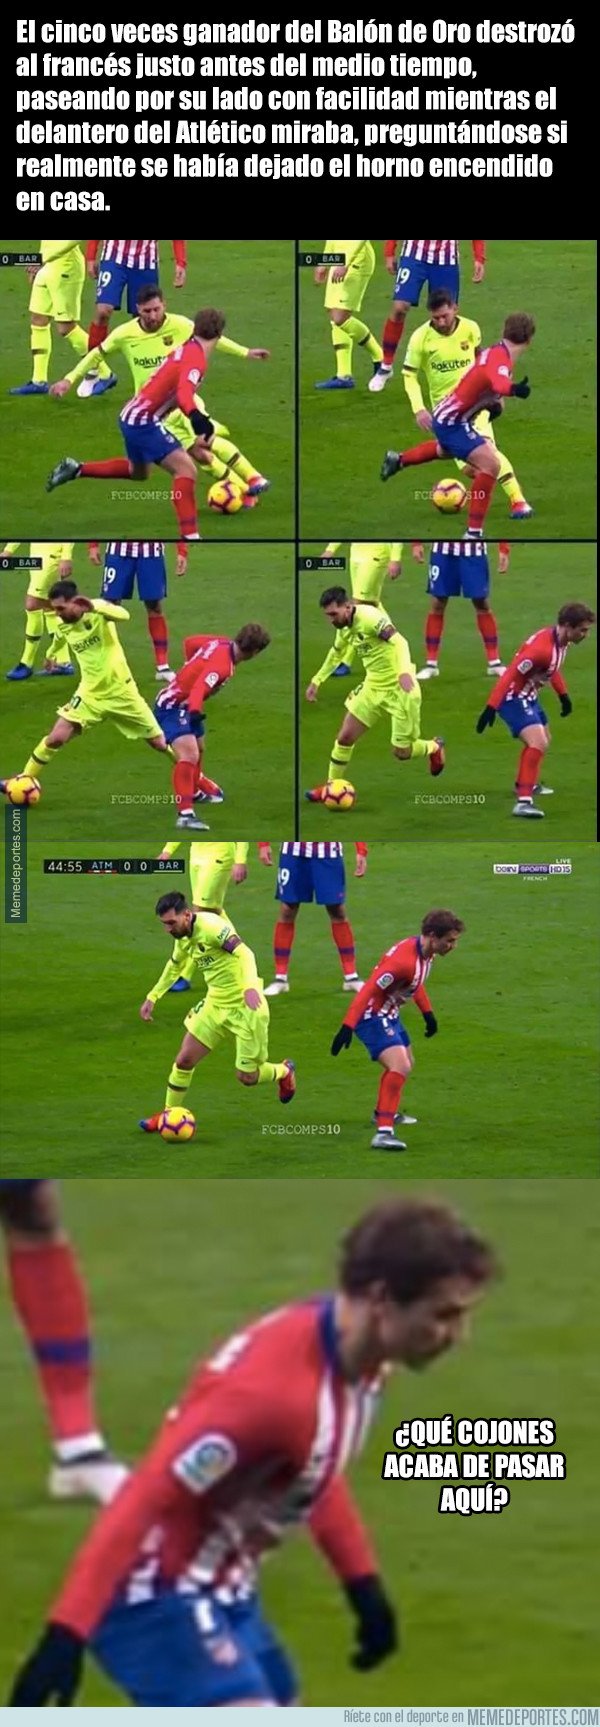 1057205 - Messi finiquitó a Griezmann con un regate y lo mejor es la reacción del francés